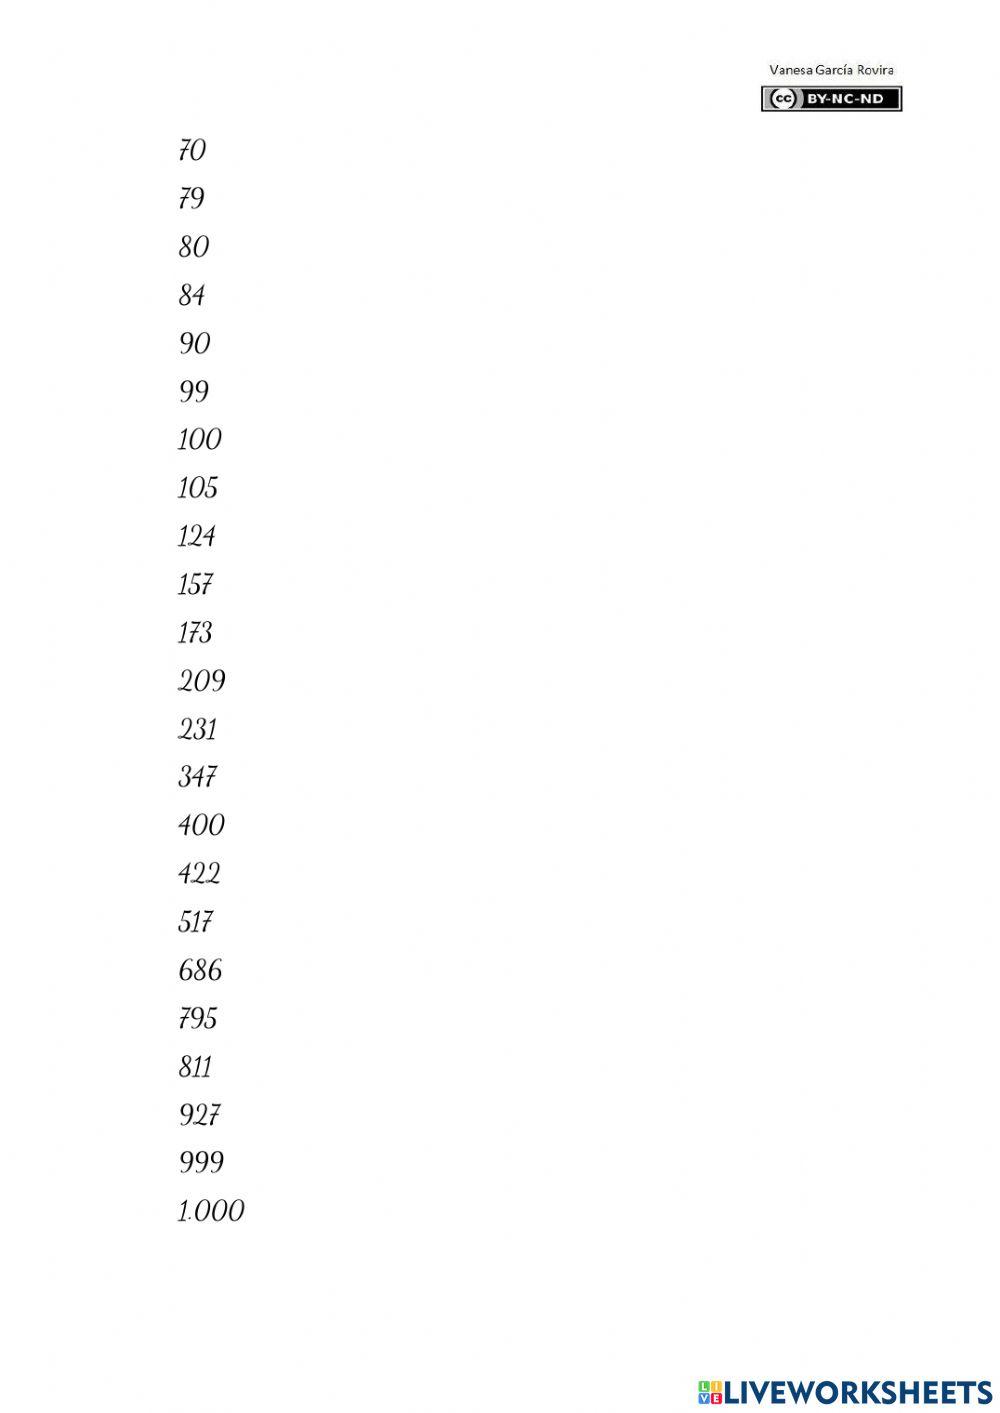 Els nombres en lletres (fins 1.000)